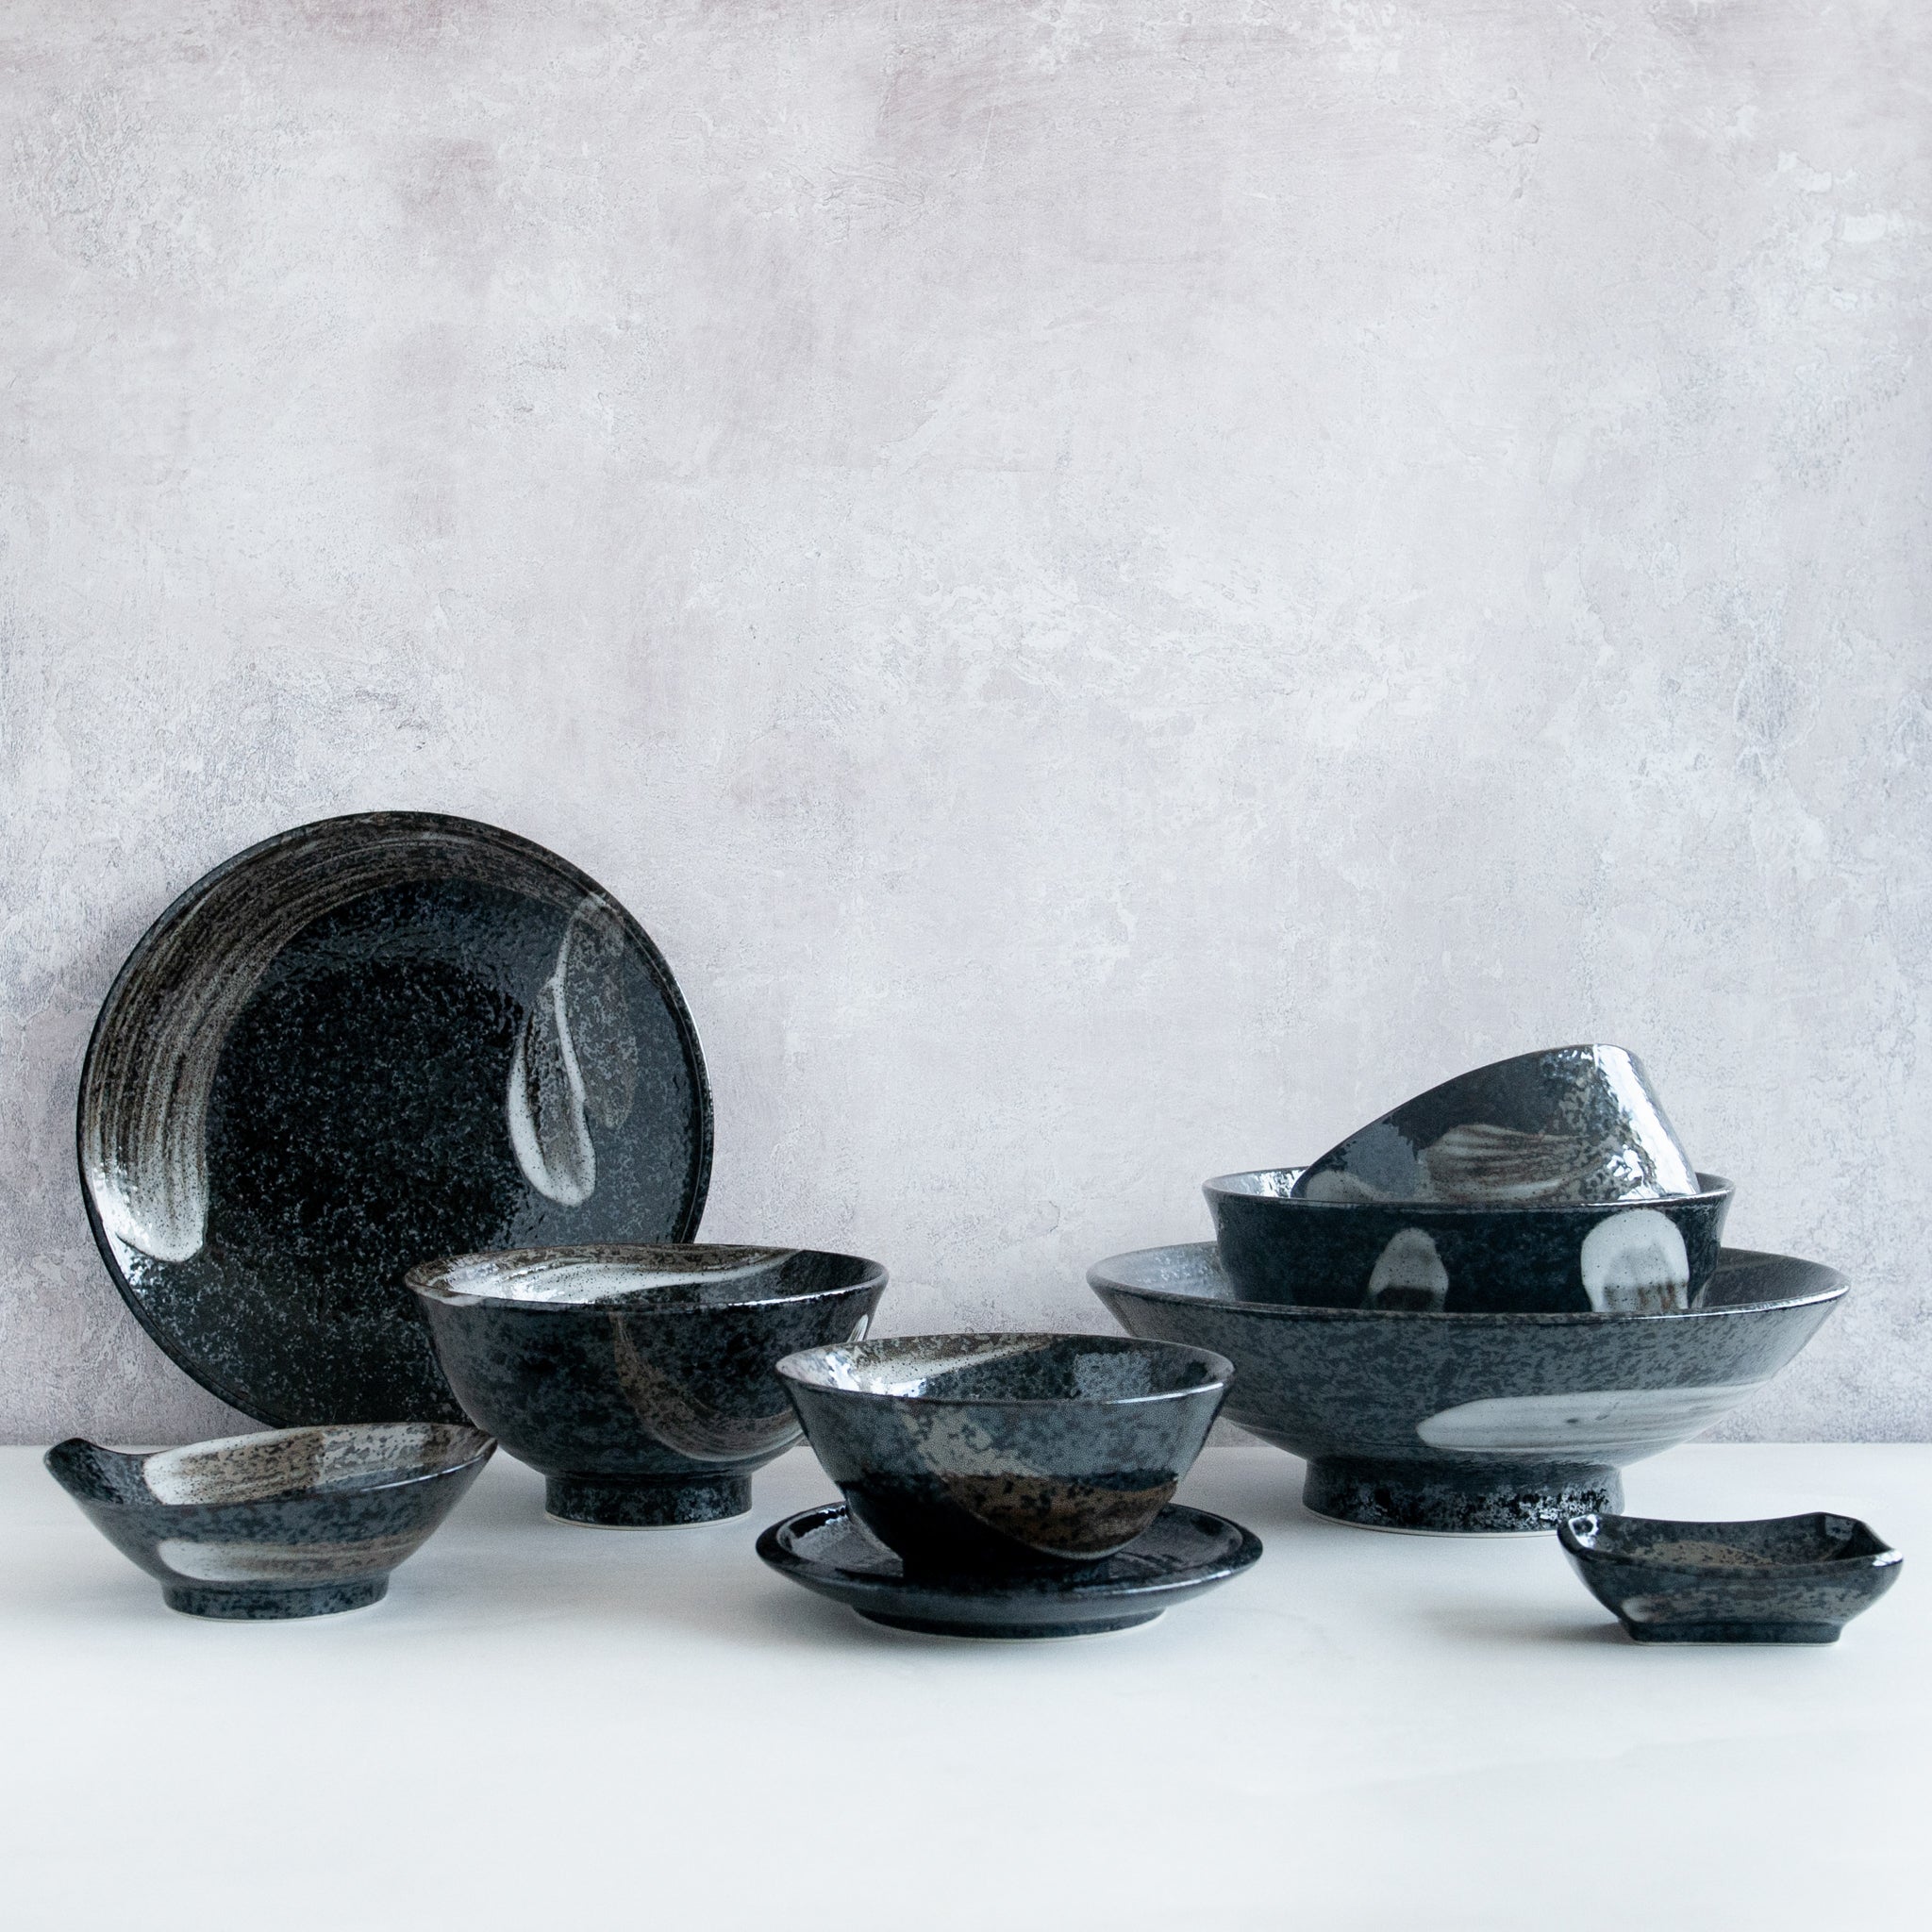 Kiji Stoneware & Ceramics Karasuba-Iro Soy Sauce Dish Ingredients Sauces & Condiments Asian Sauces & Condiments Japanese Food